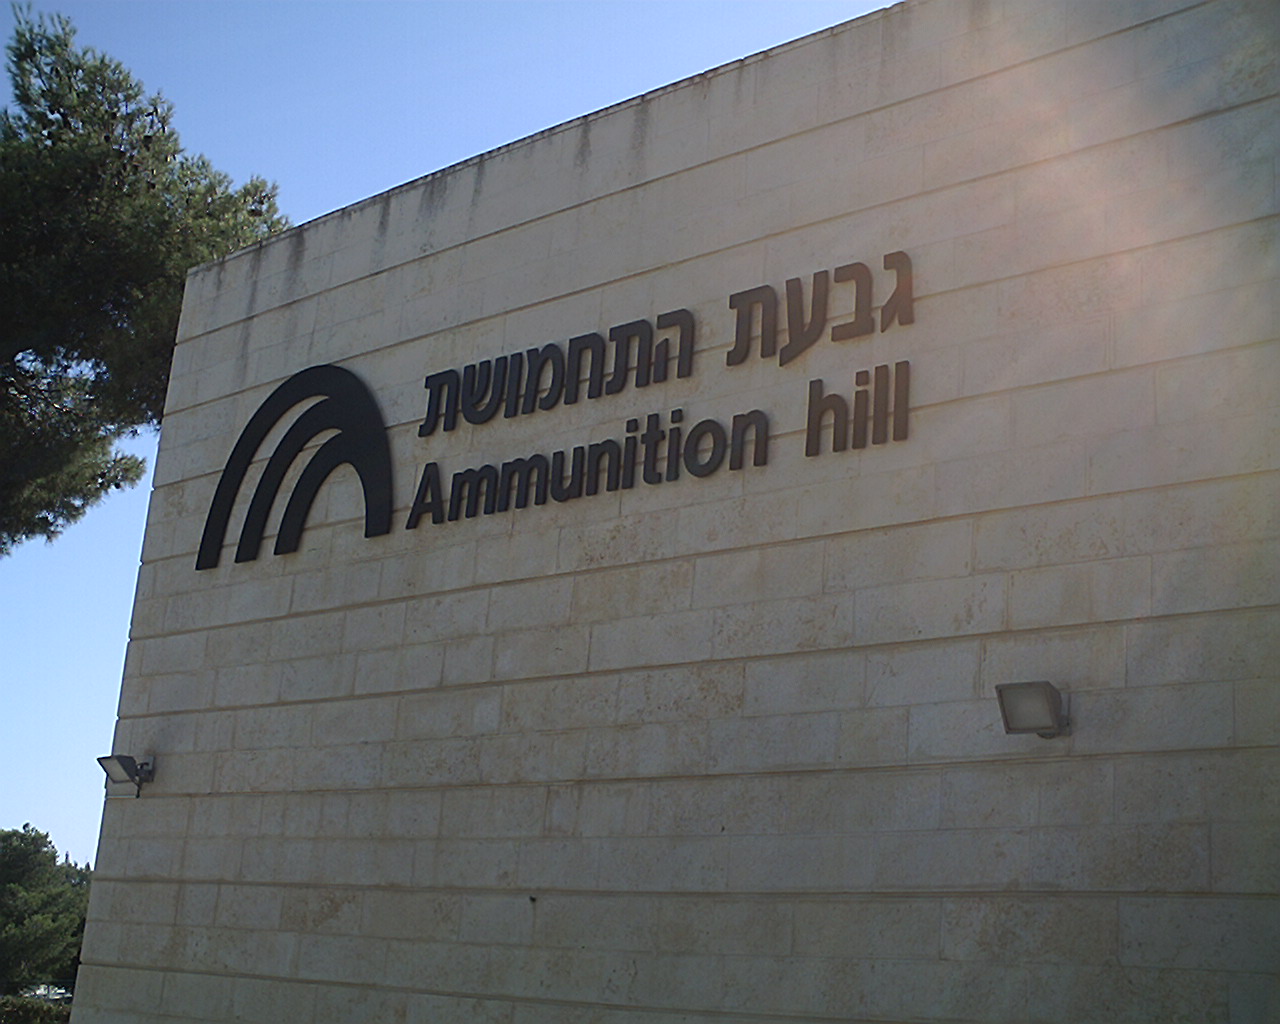 Ammunition Hill museum